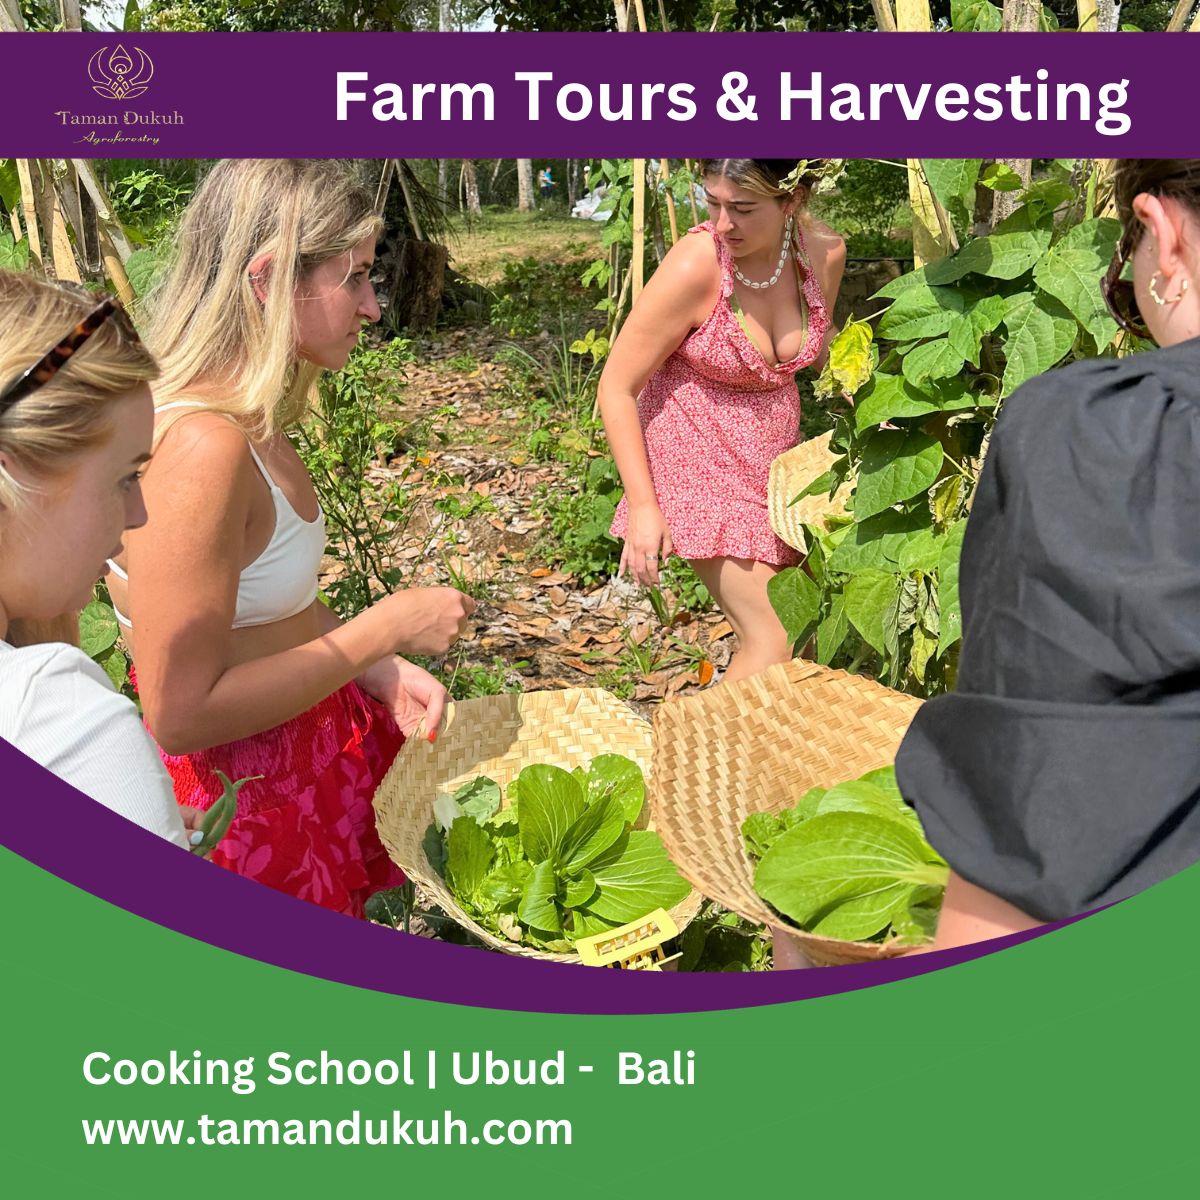 taman dukuh farm tours and harvesting